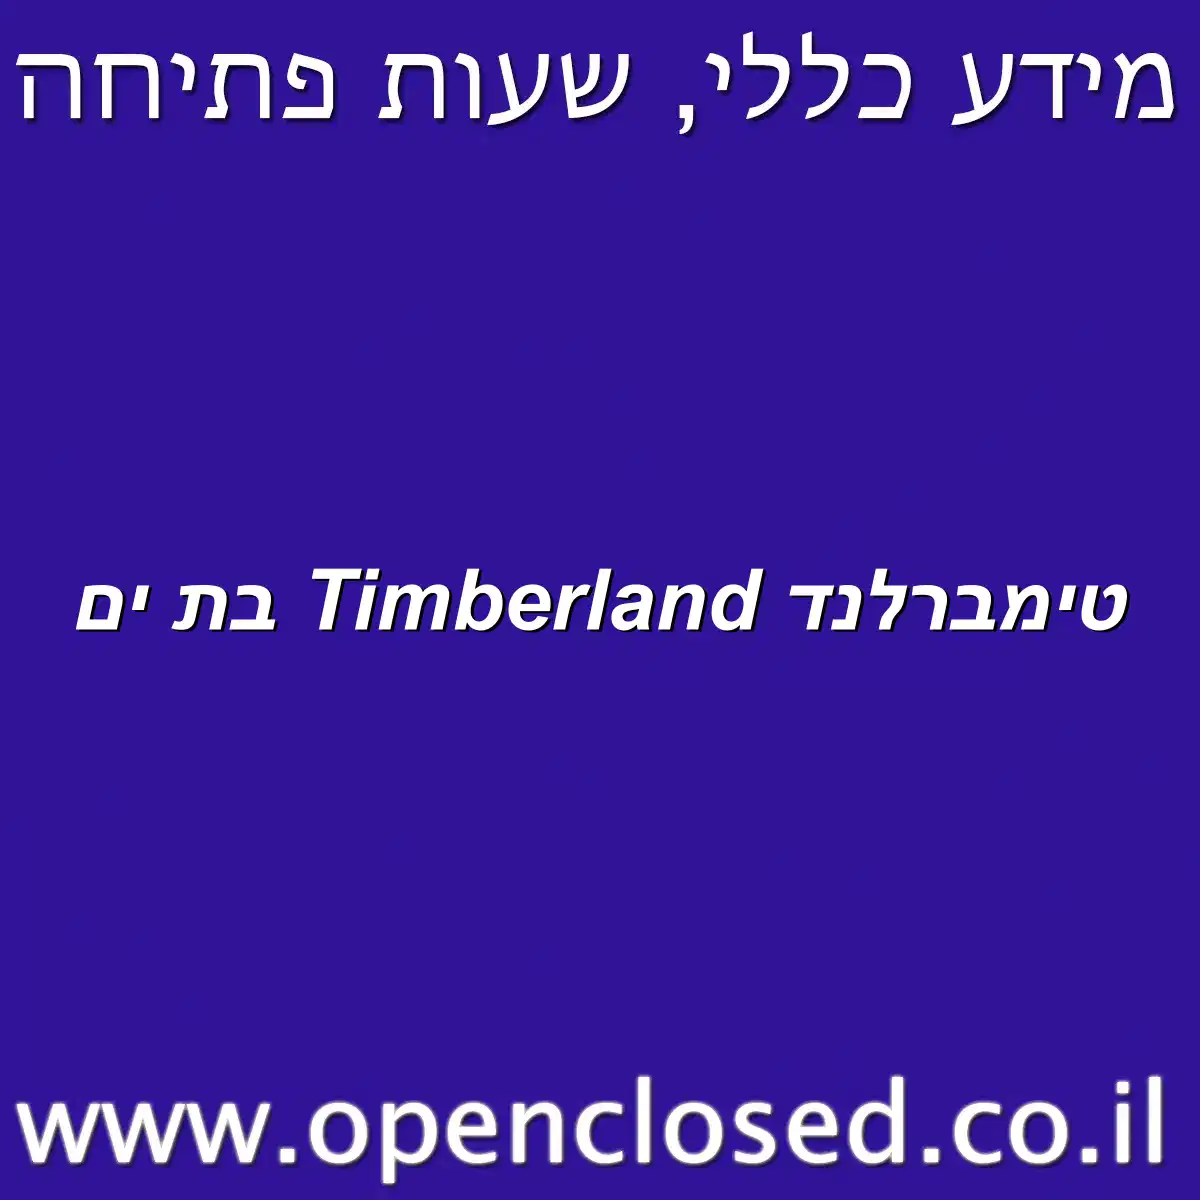 טימברלנד Timberland בת ים